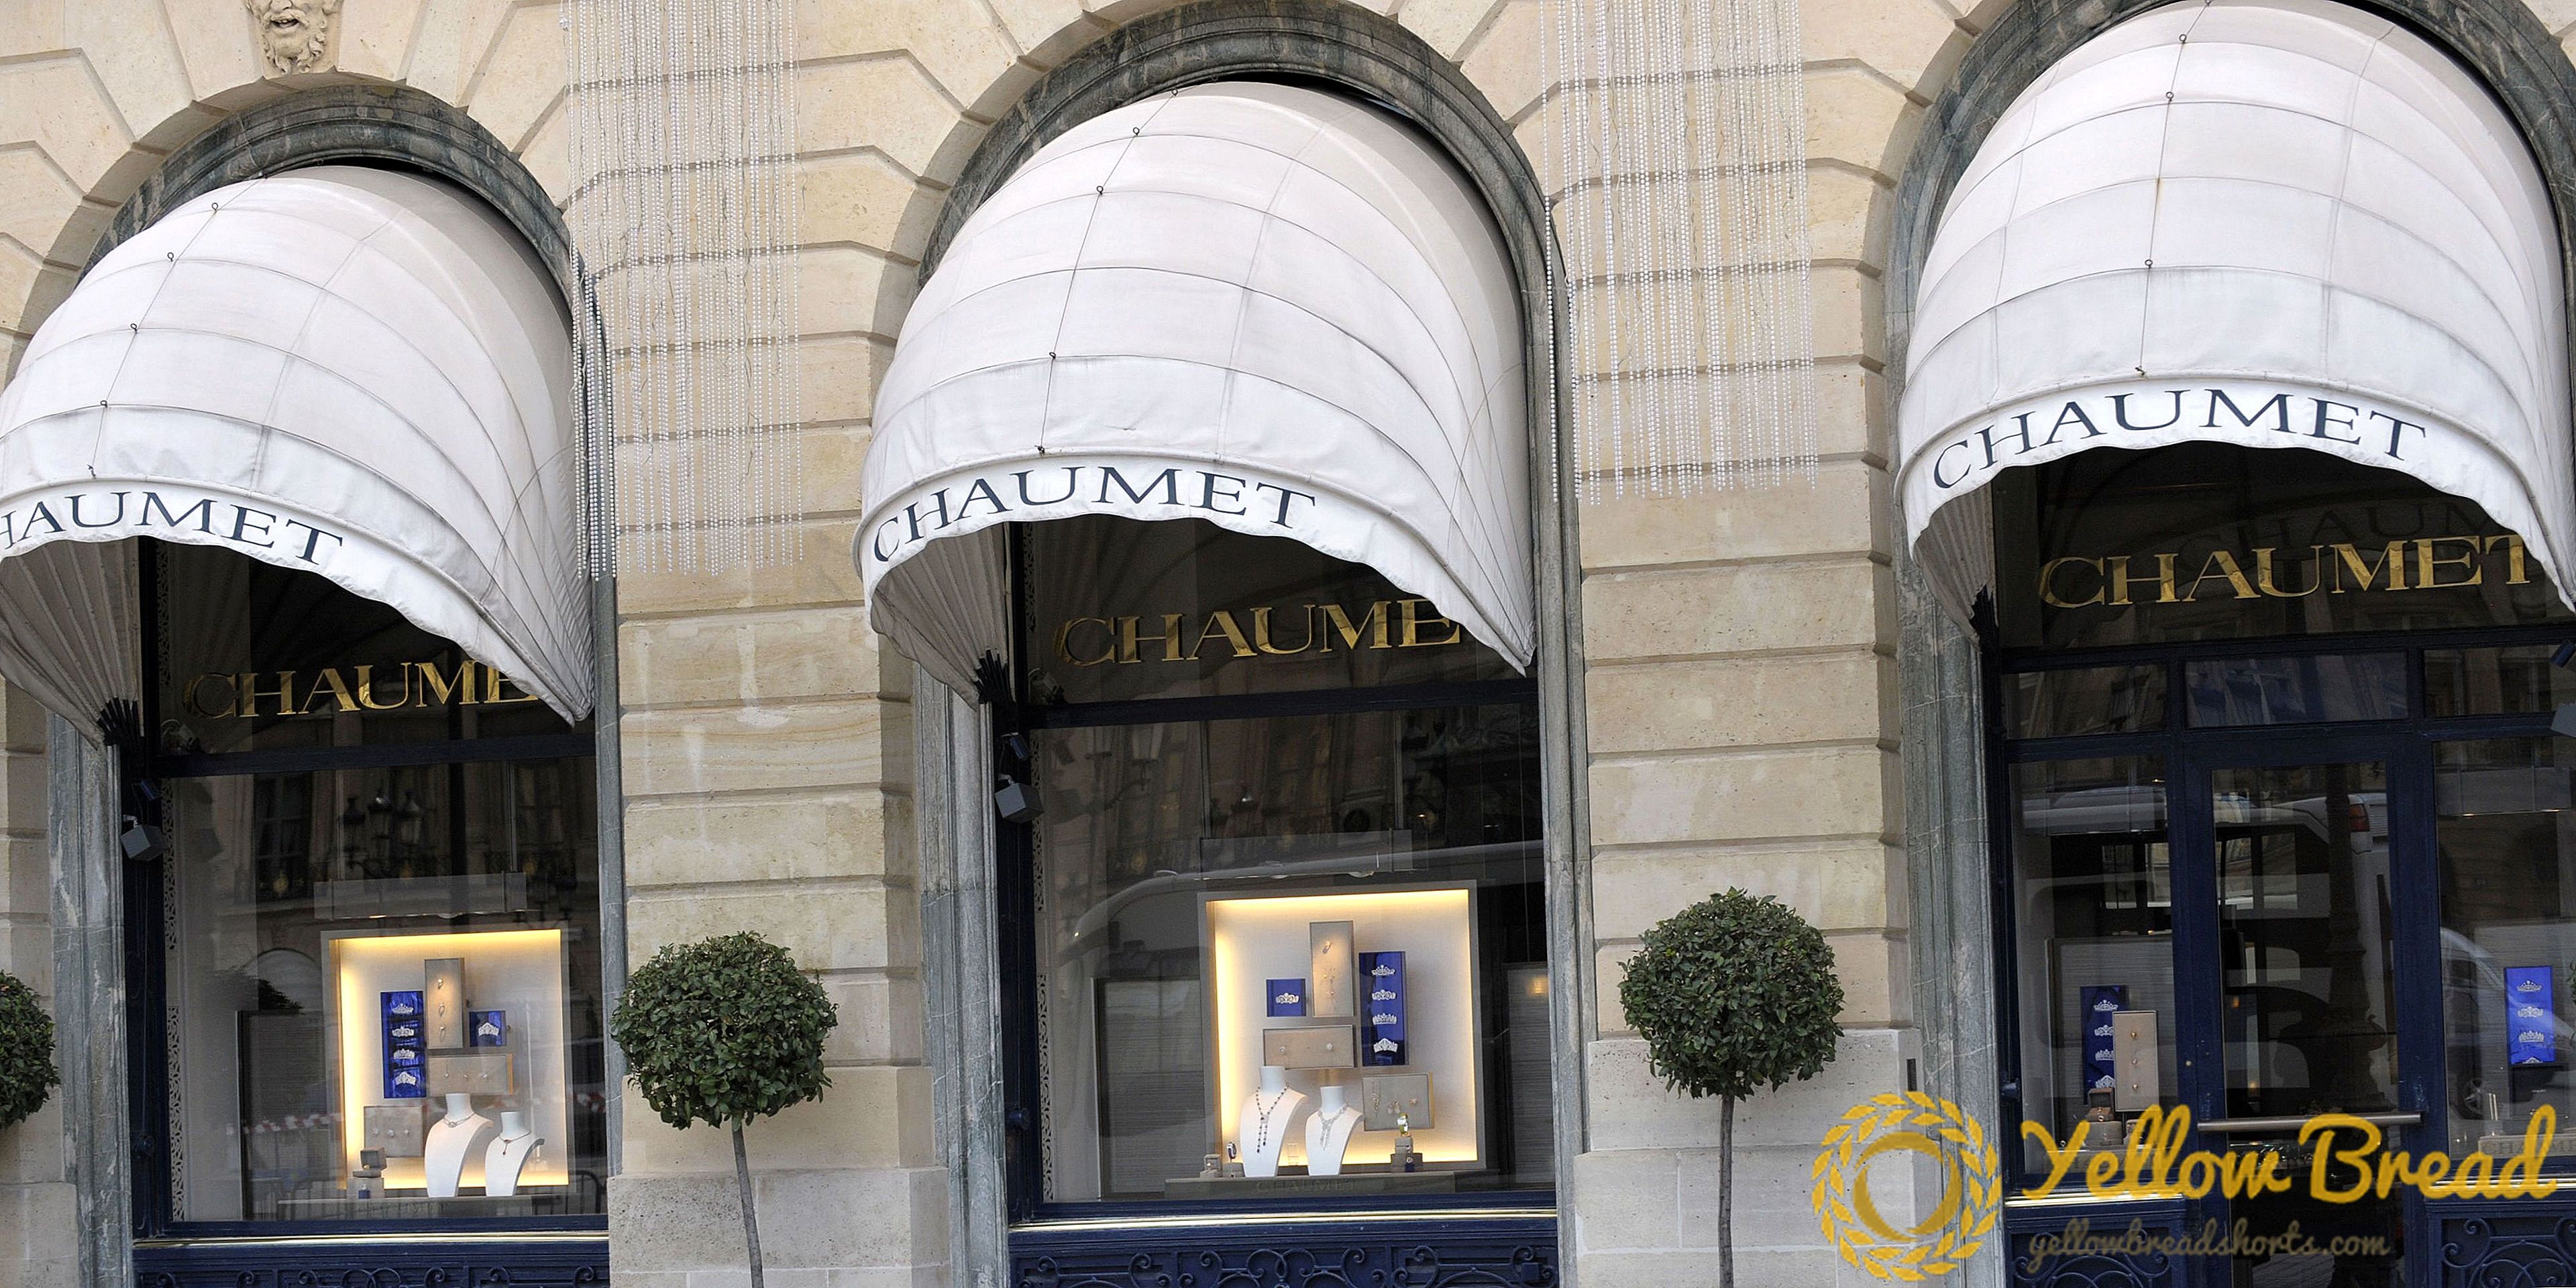 Maison Chaumet v Parizu odpre pop-up muzej